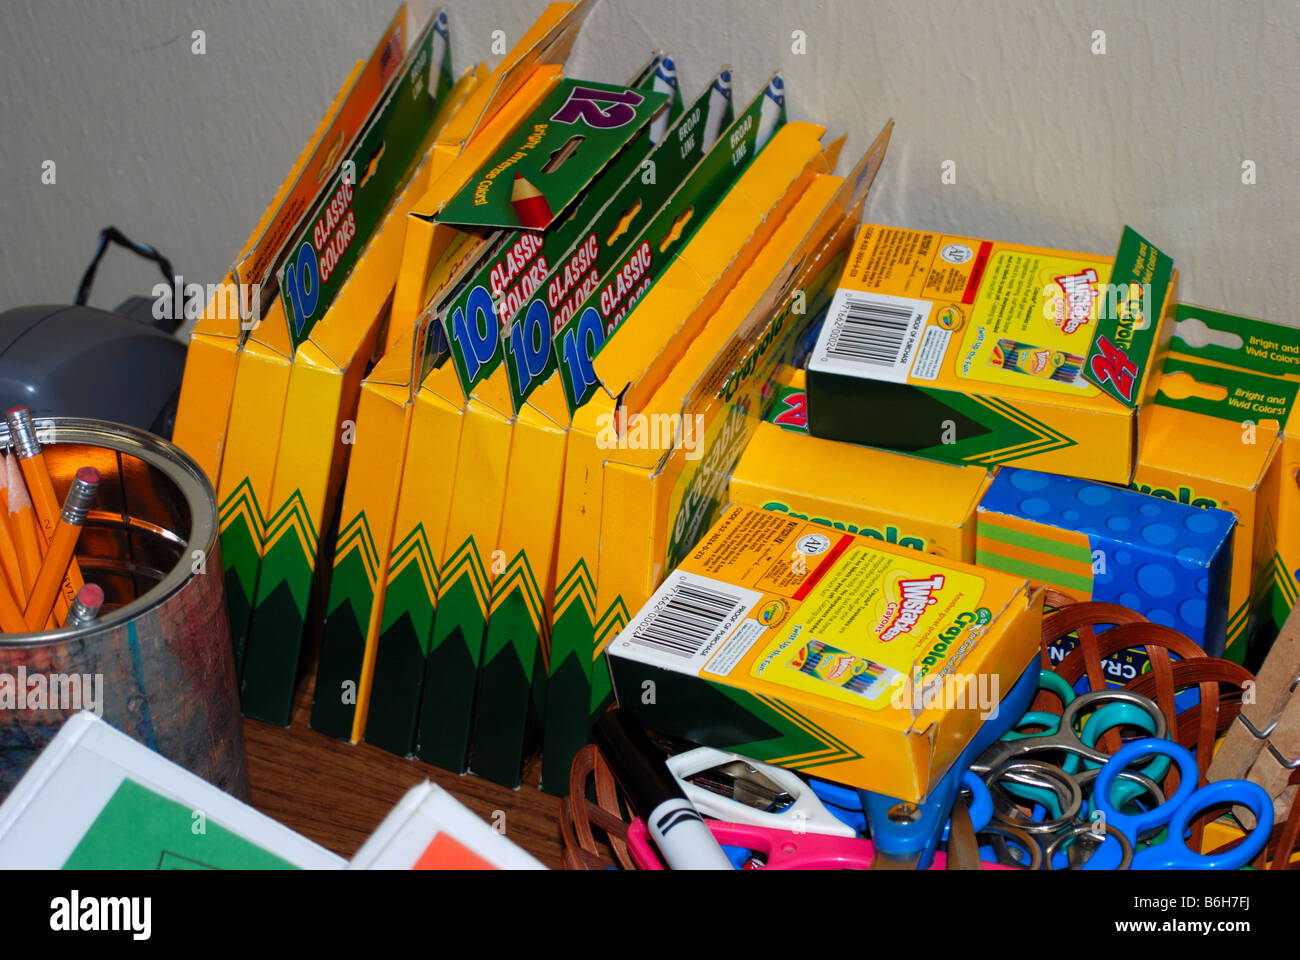 Suministros escolares sentados en un escritorio, incluyendo lápices, tijeras, lápices y marcadores. Foto de stock